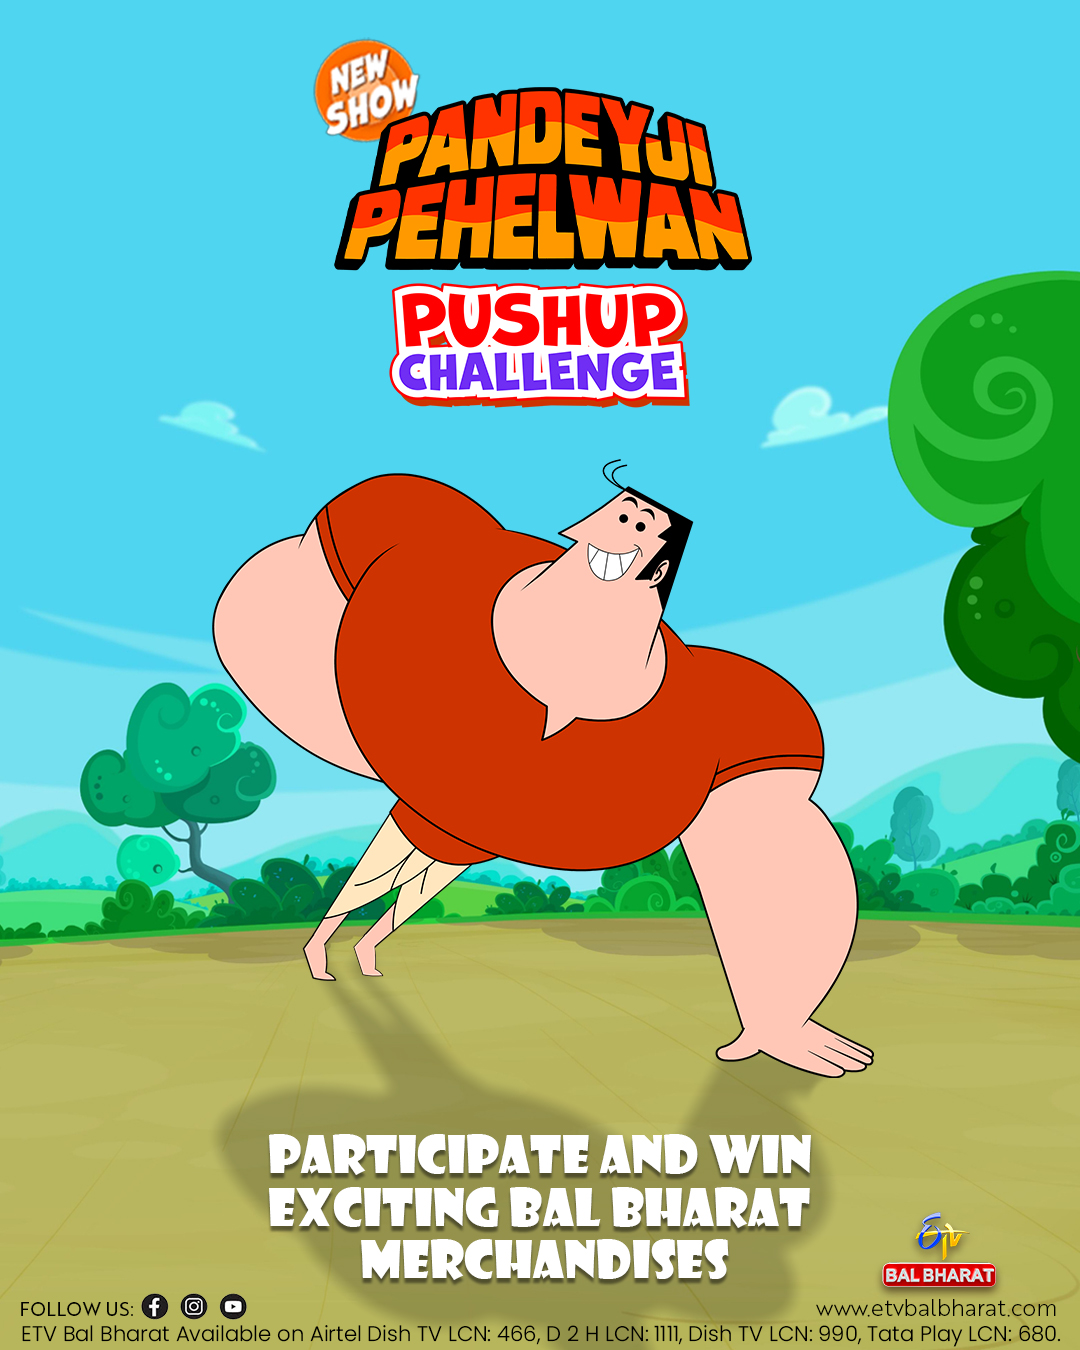 Pandeyji Pehelwan Animated Official Release Poster